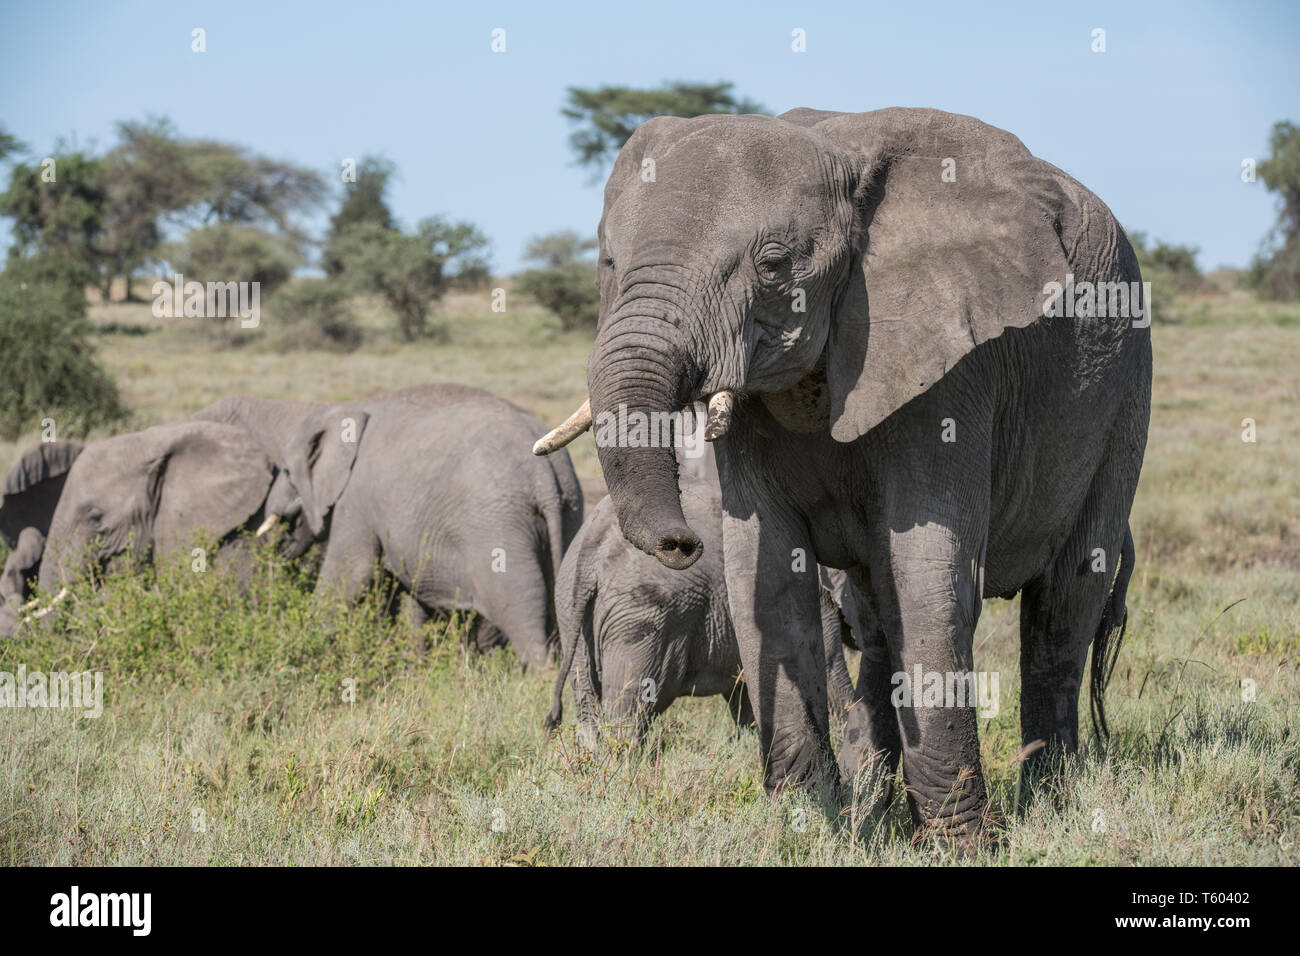 Elephant, Tanzania Stock Photo